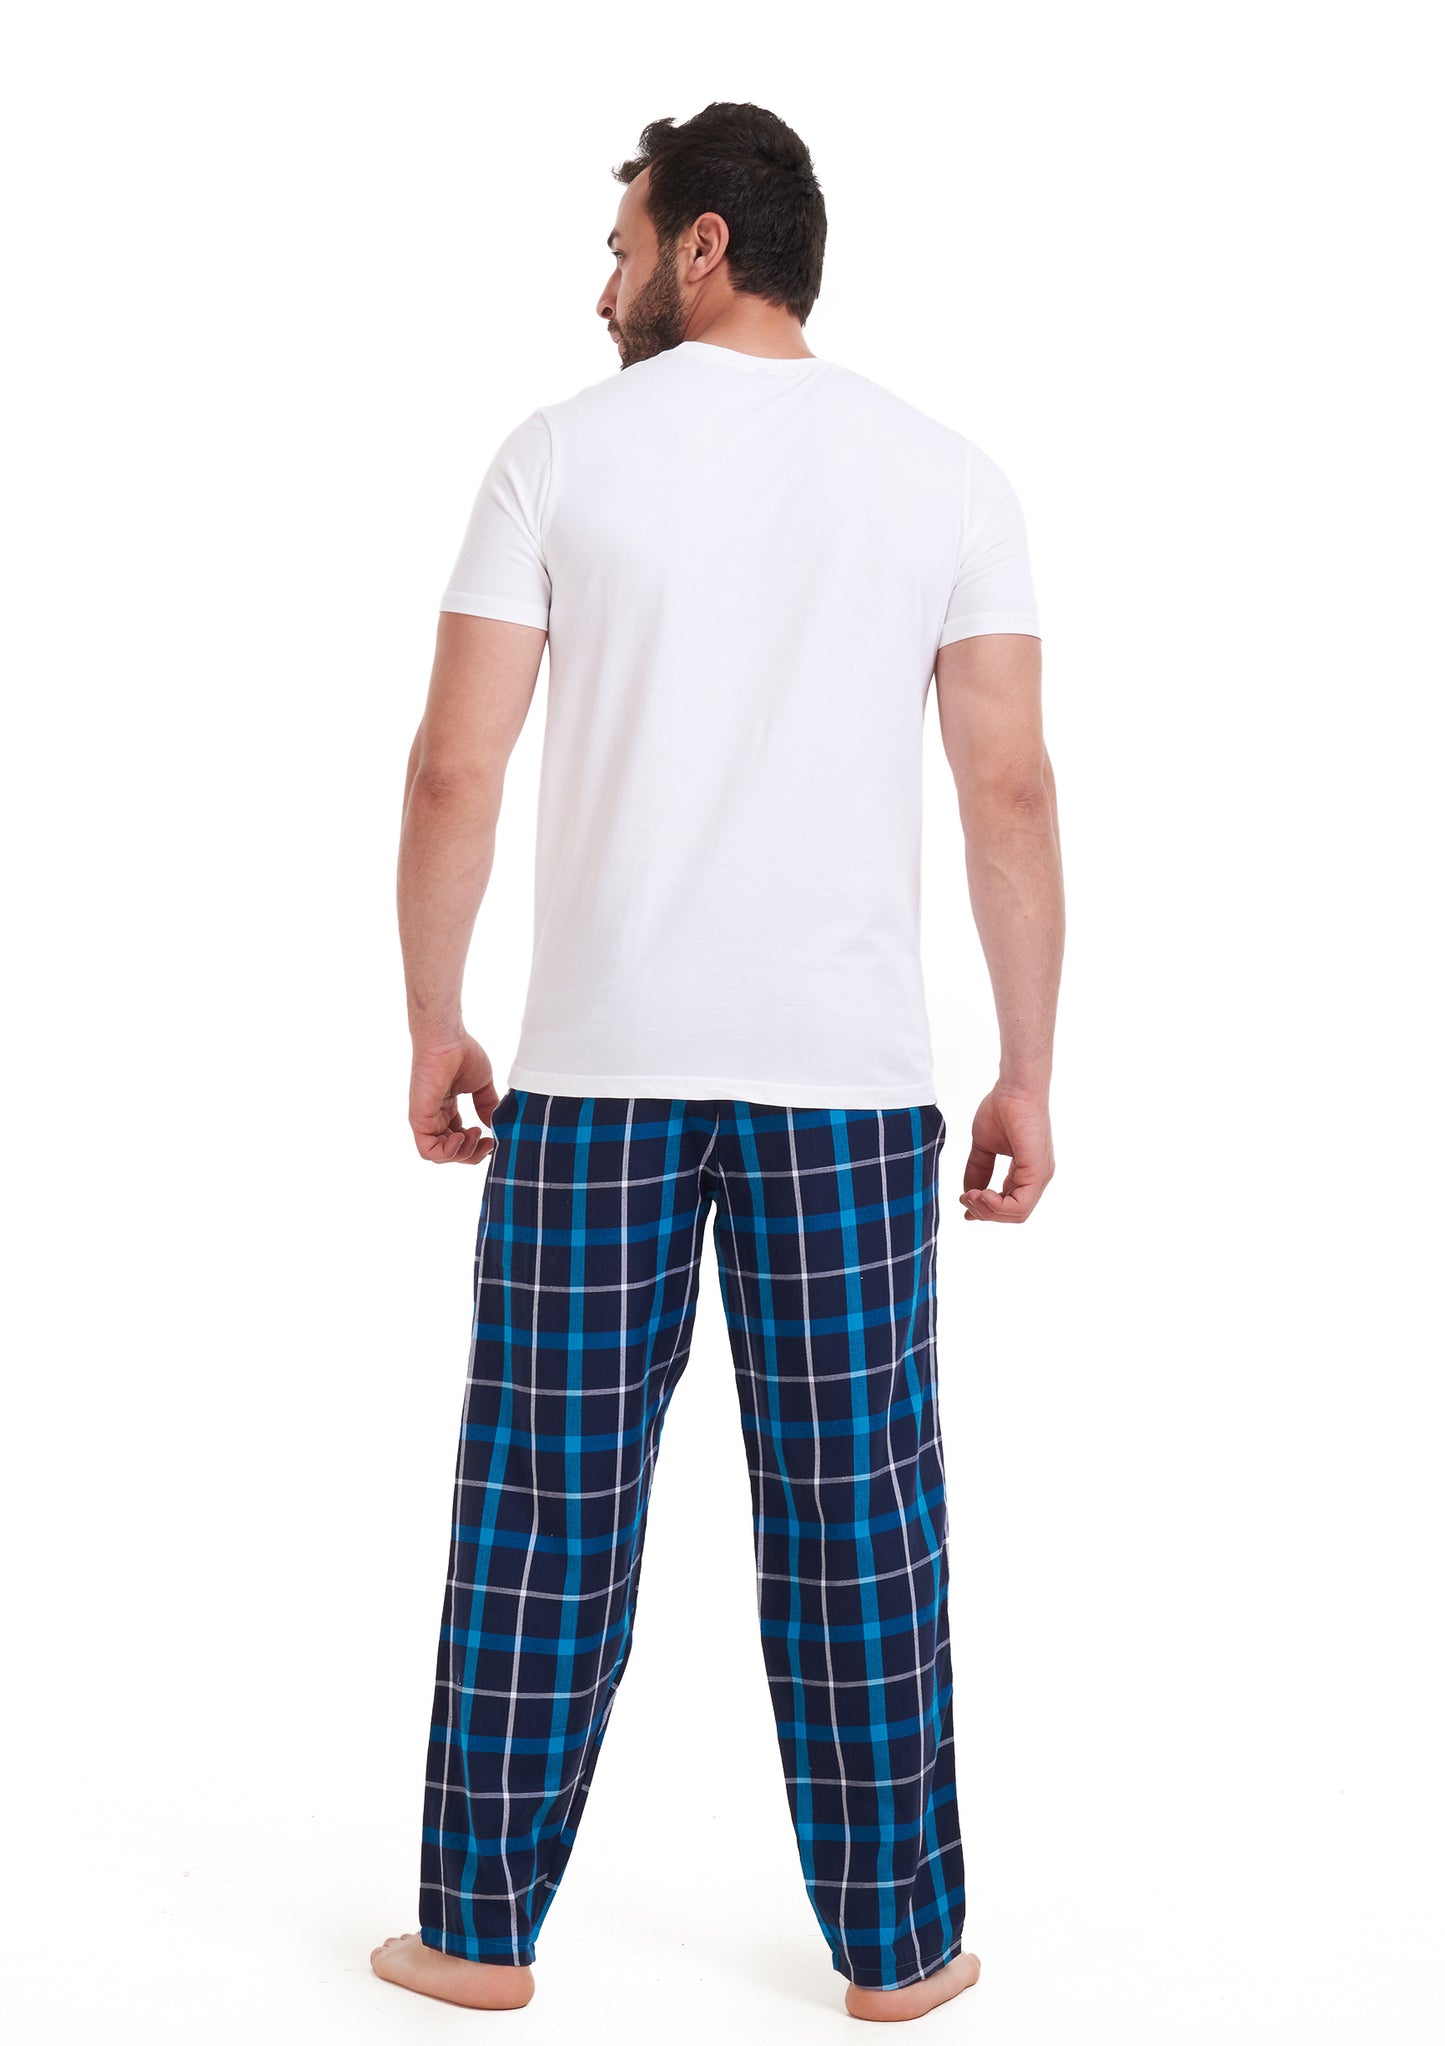 Aqua Checkered pajama